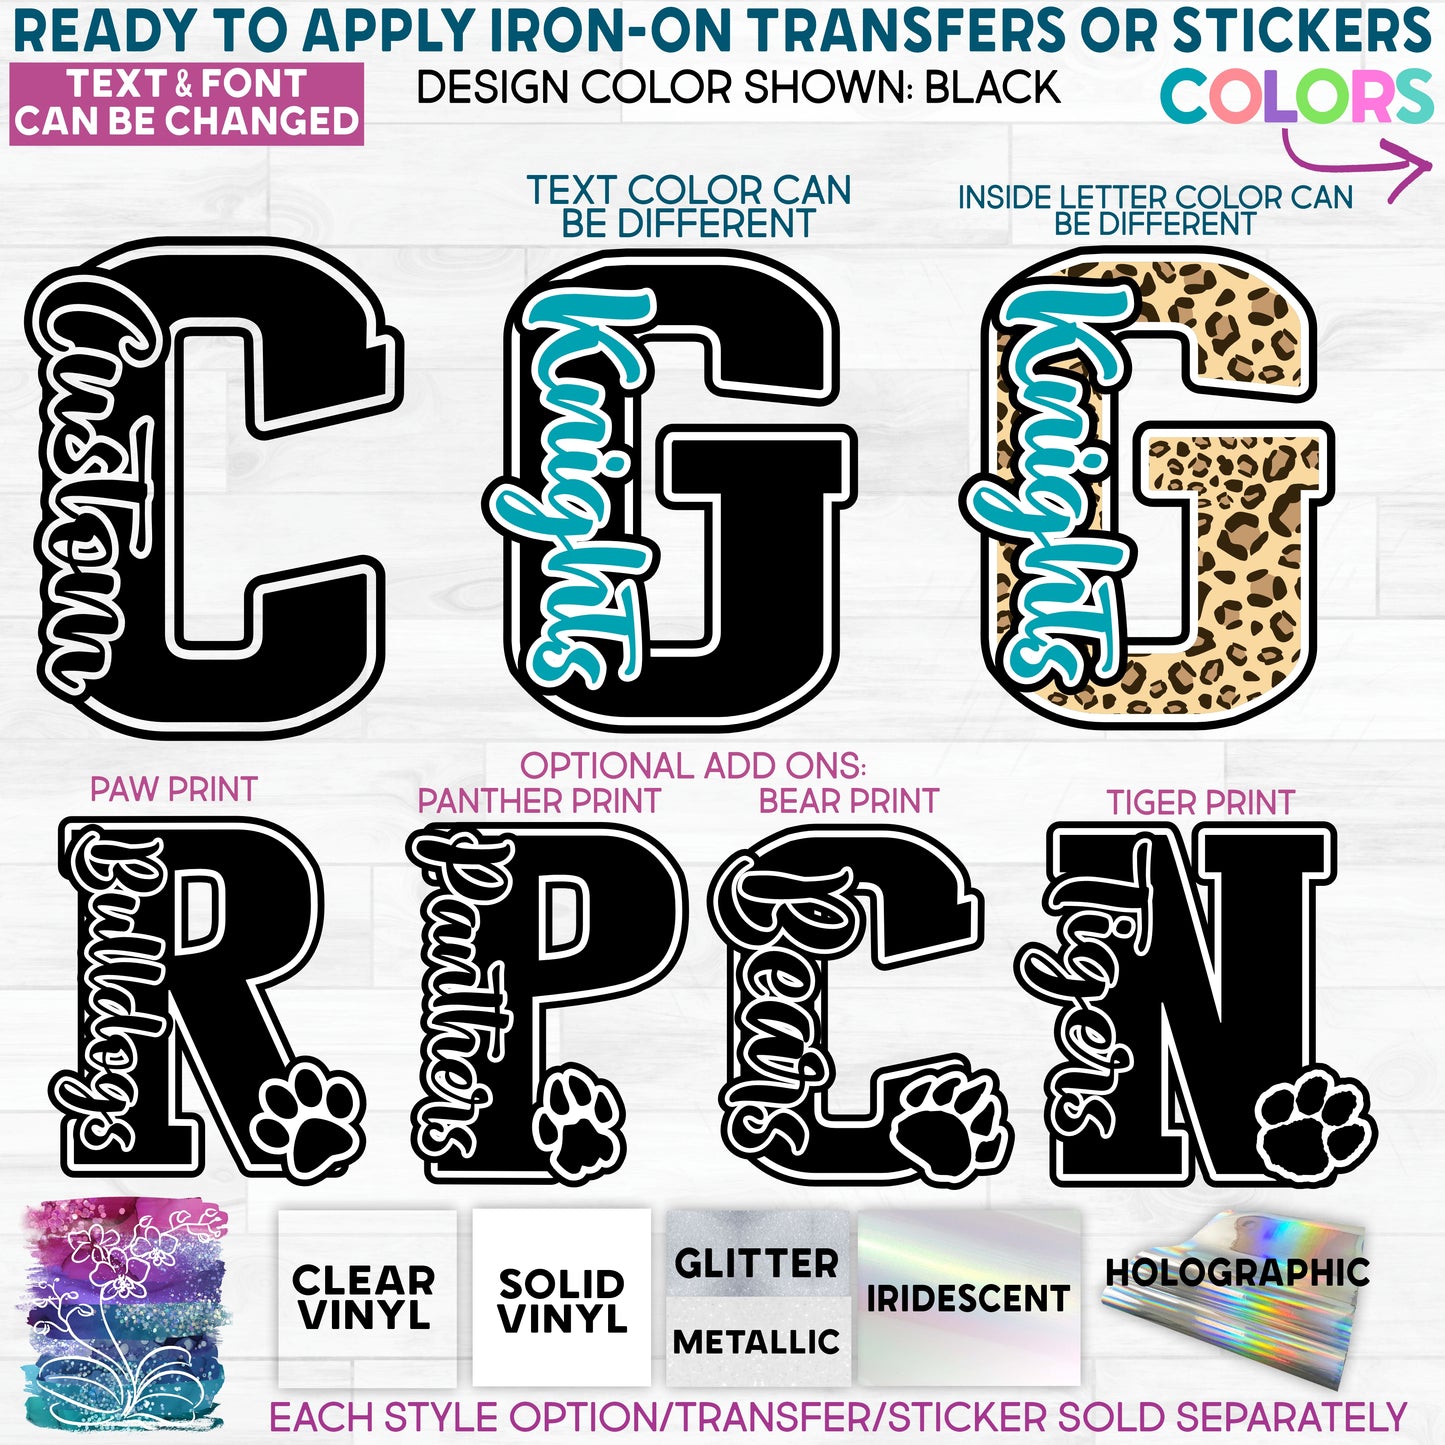 (s123-C) Custom Collegiate Letter Team Name Glitter or Vinyl Iron-On Transfer or Sticker